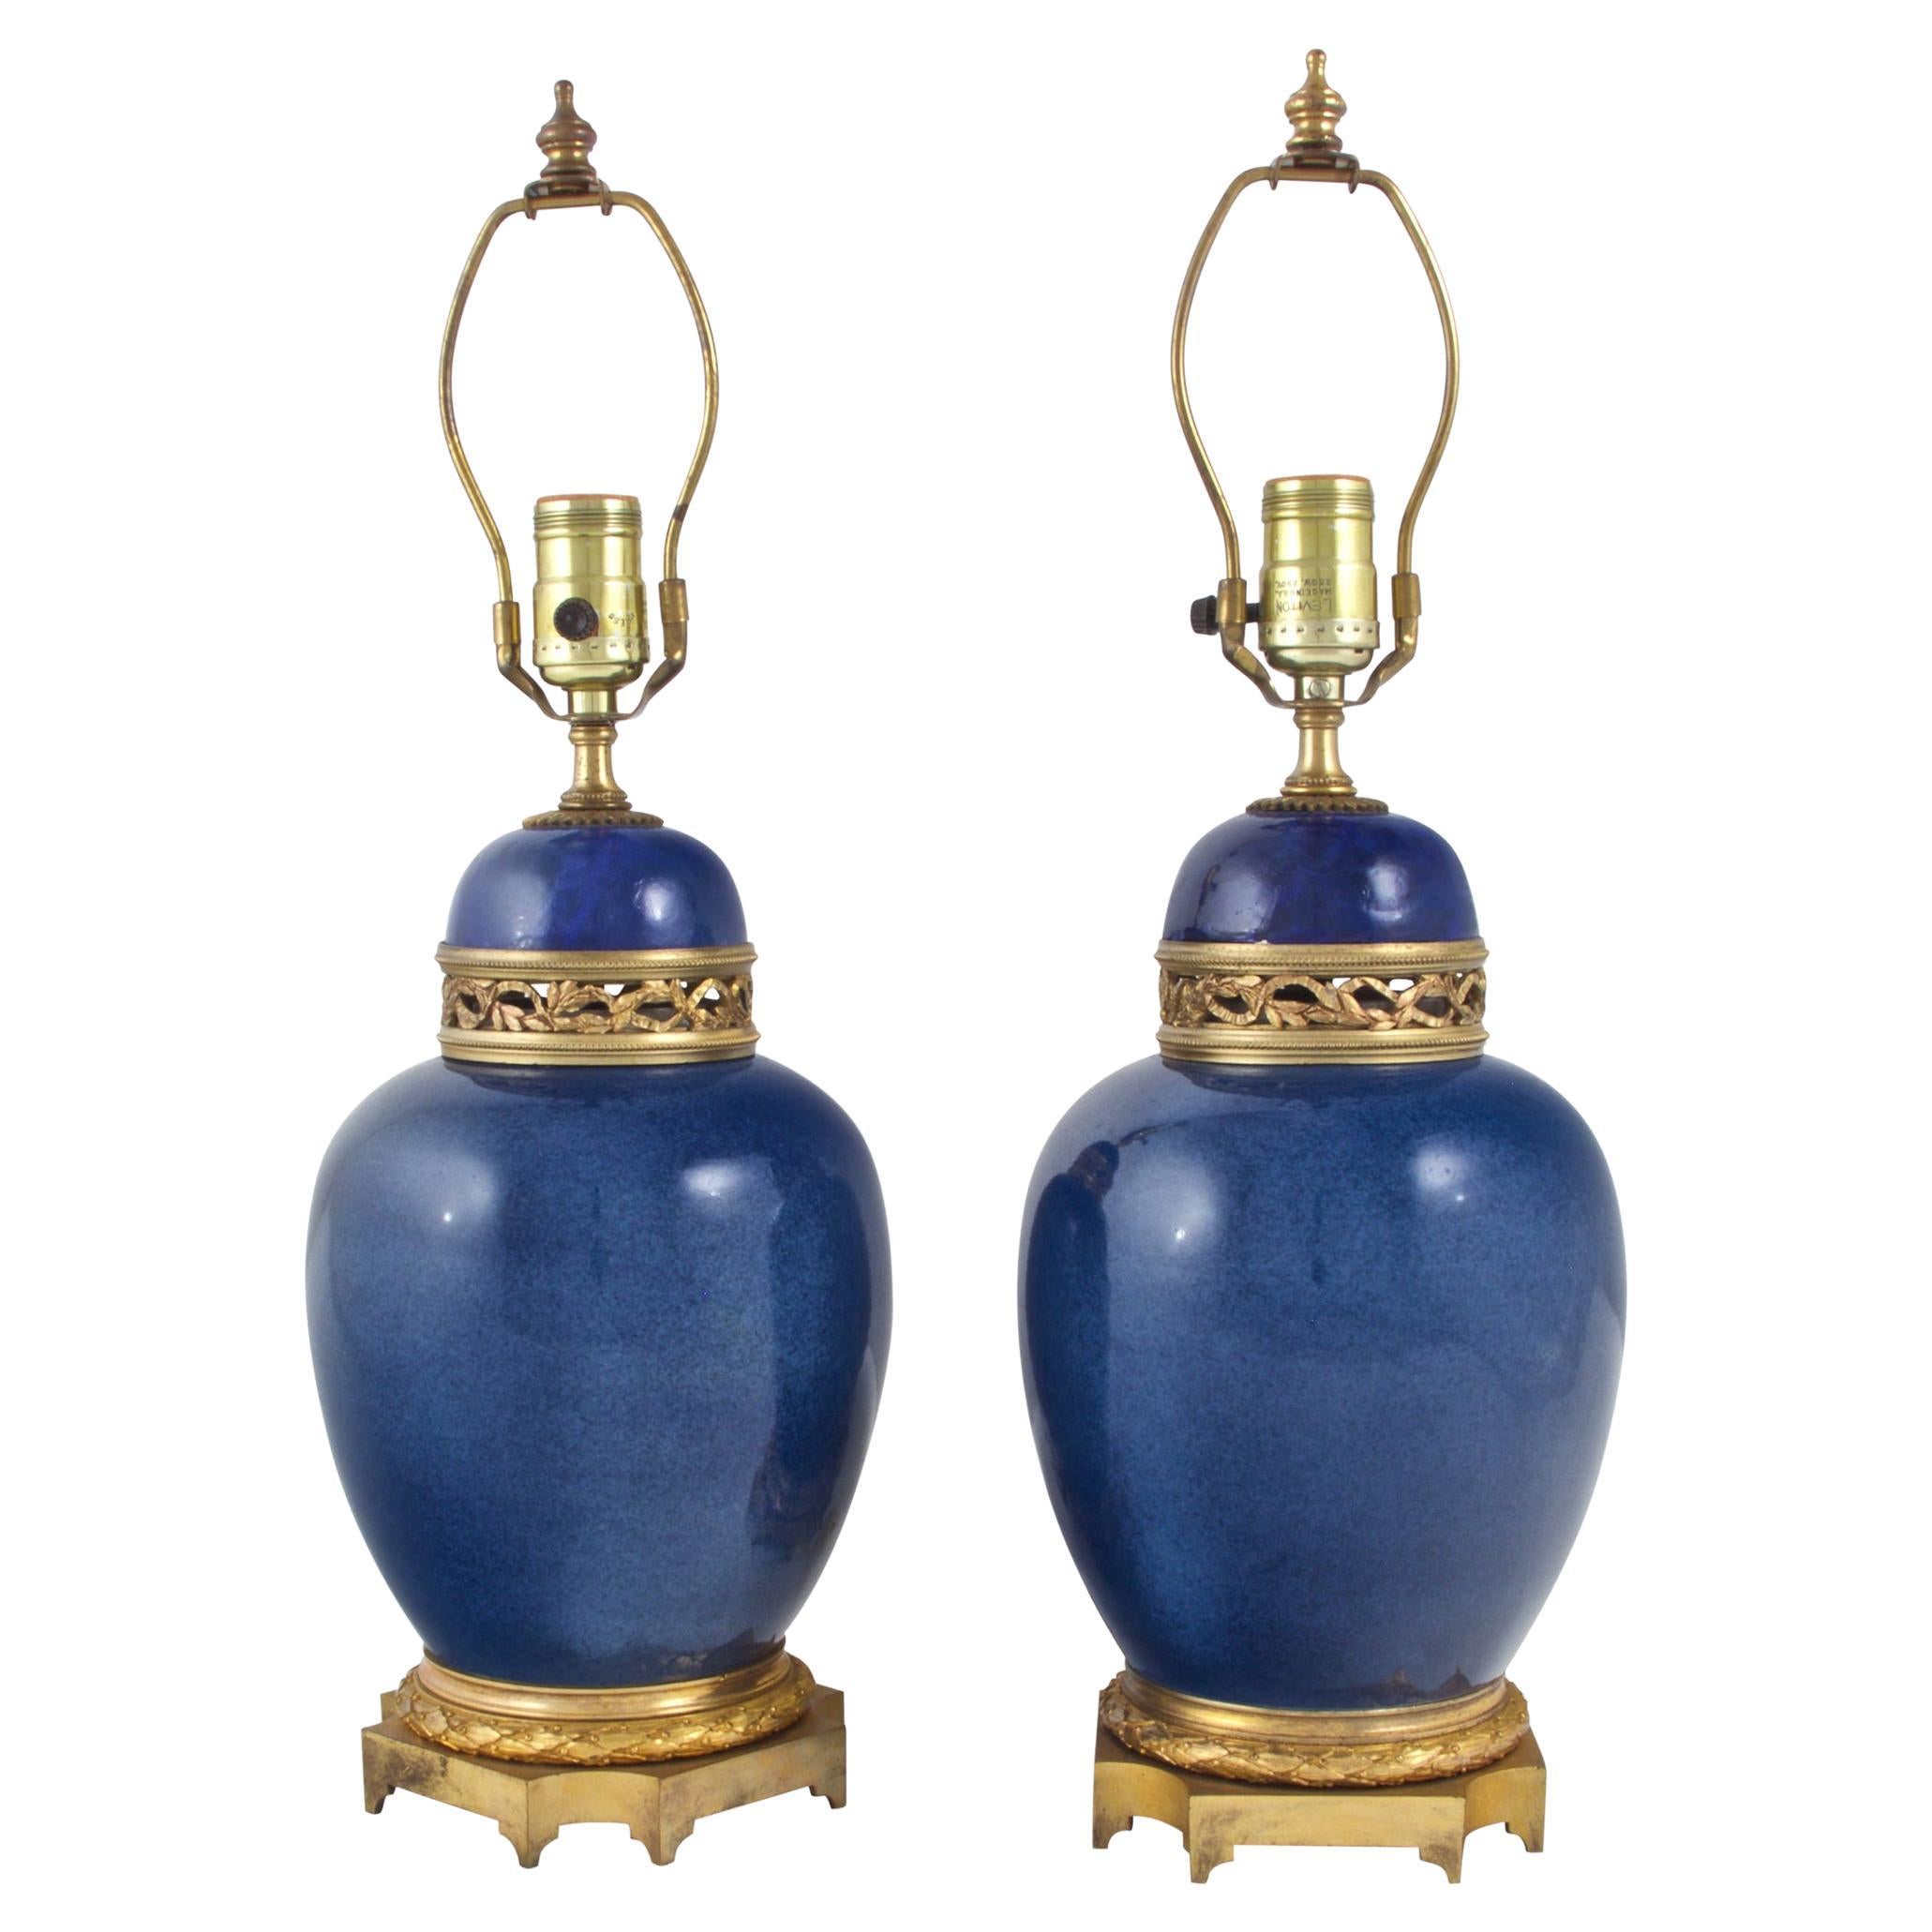  Paar französische Vasen aus blauem Porzellan mit Goldbronze-Montierung als Lampen